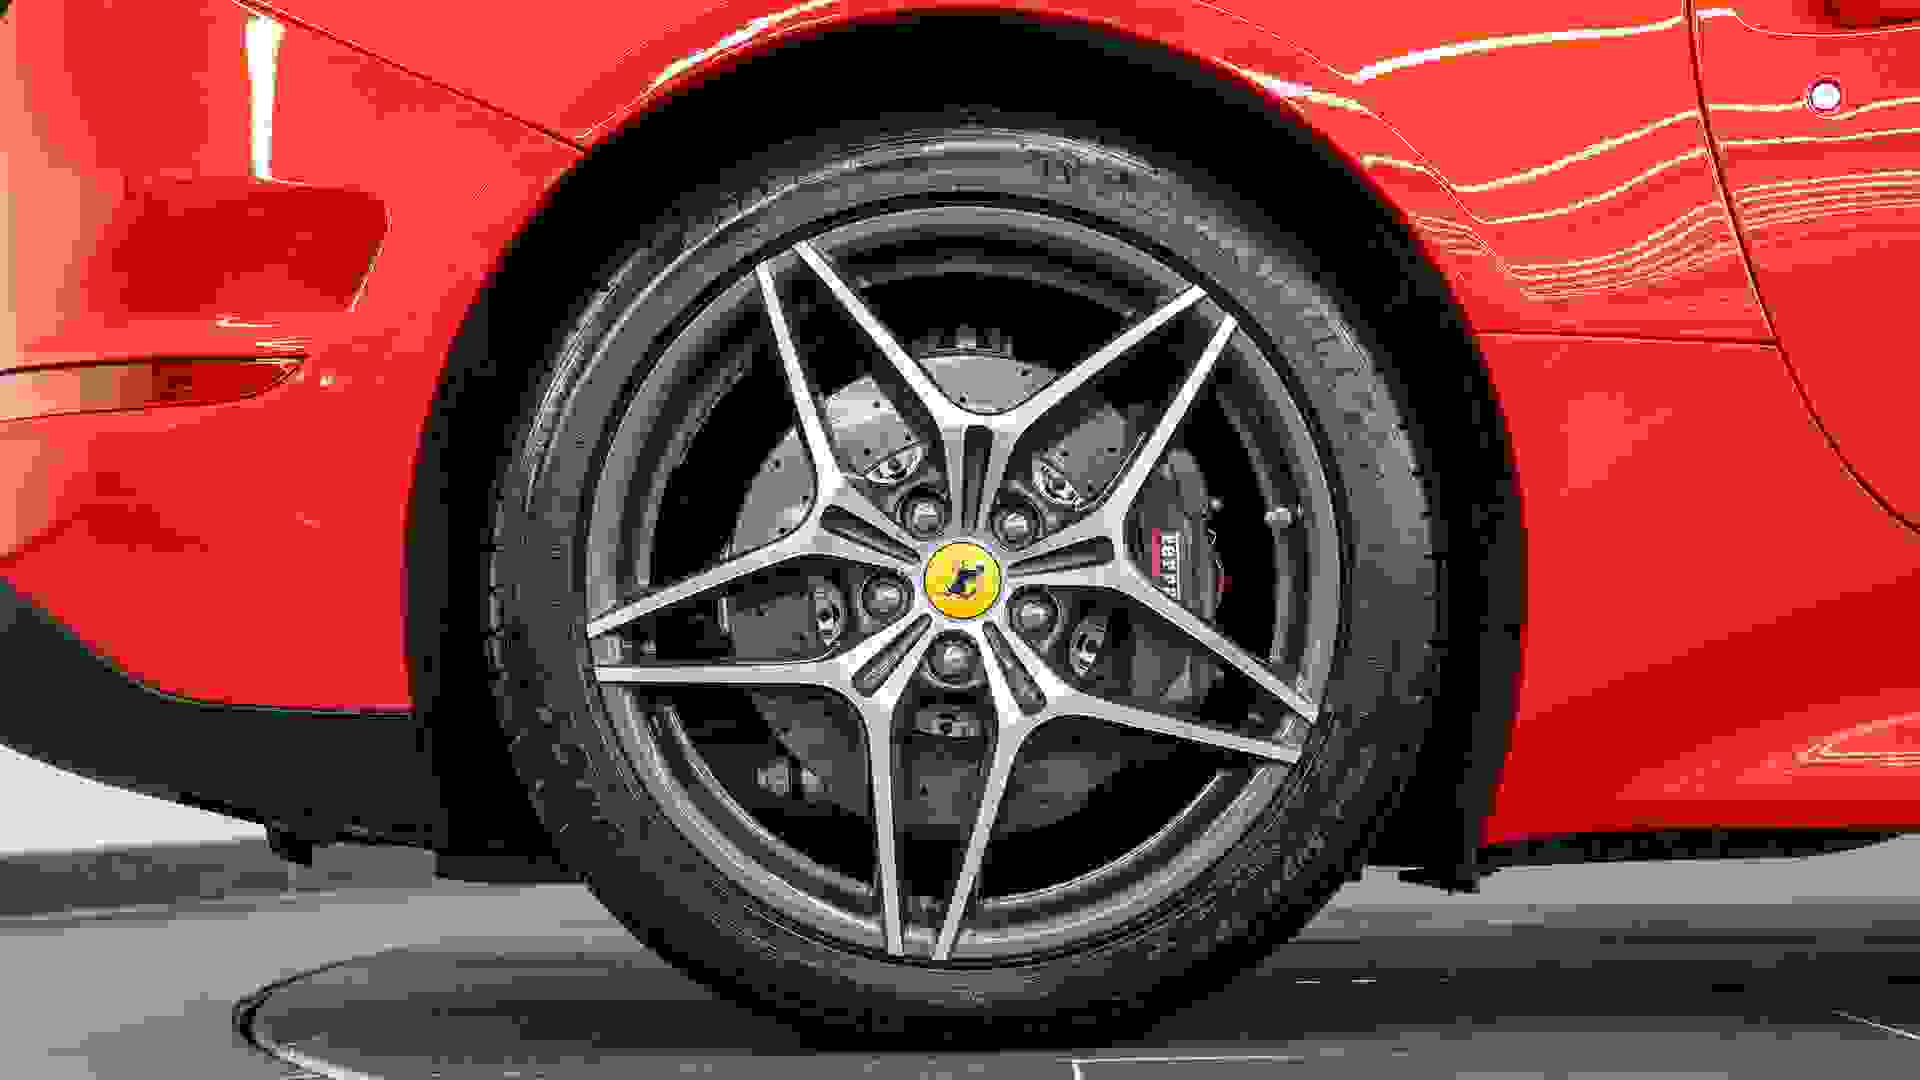 Ferrari California Photo b4a454c9-c2bc-403f-a401-d65930f58a6e.jpg